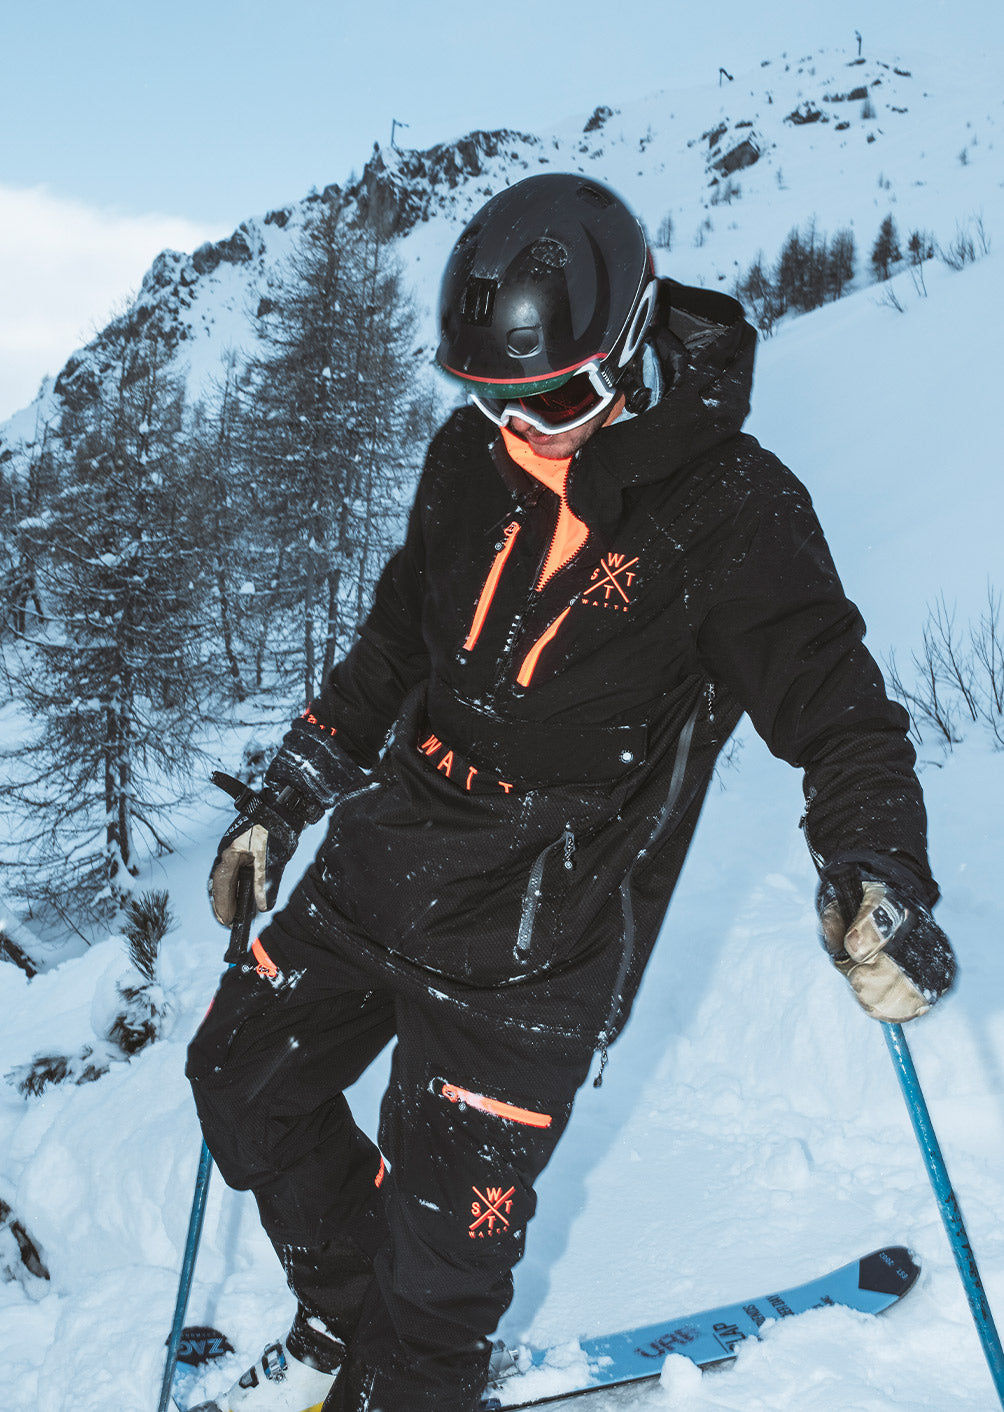  Ski Clothing - Black / Ski Clothing / Sport Specific